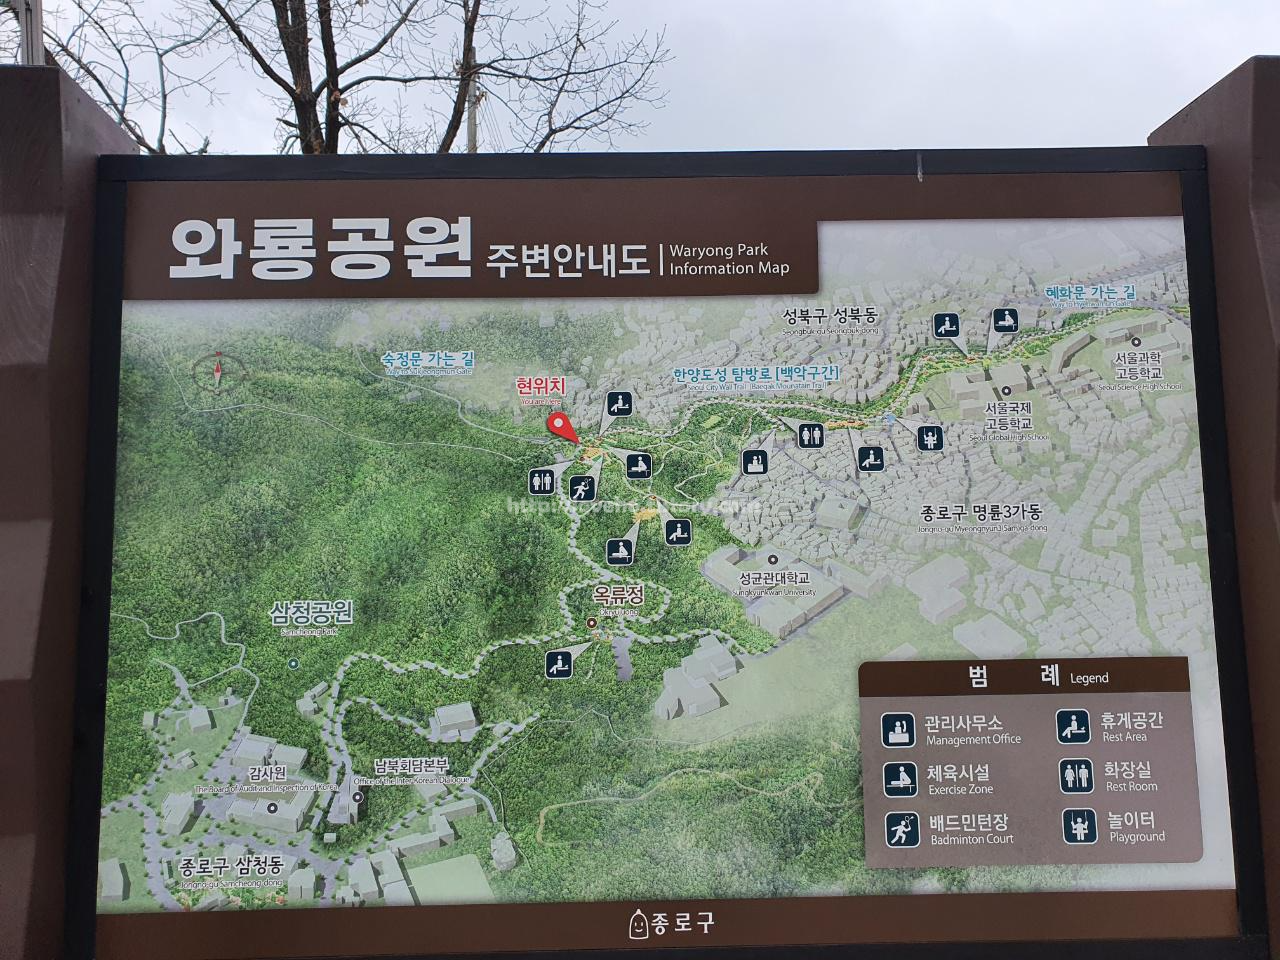 북악산_北岳山_Bukaksan/와룡공원에 도착했습니다.

현위치 지도에서 확인하시고

어느쪽으로 갈지 정하신 후

출발하시면 됩니다~

저는 북악산 정상으로 정하고

출발했어요
